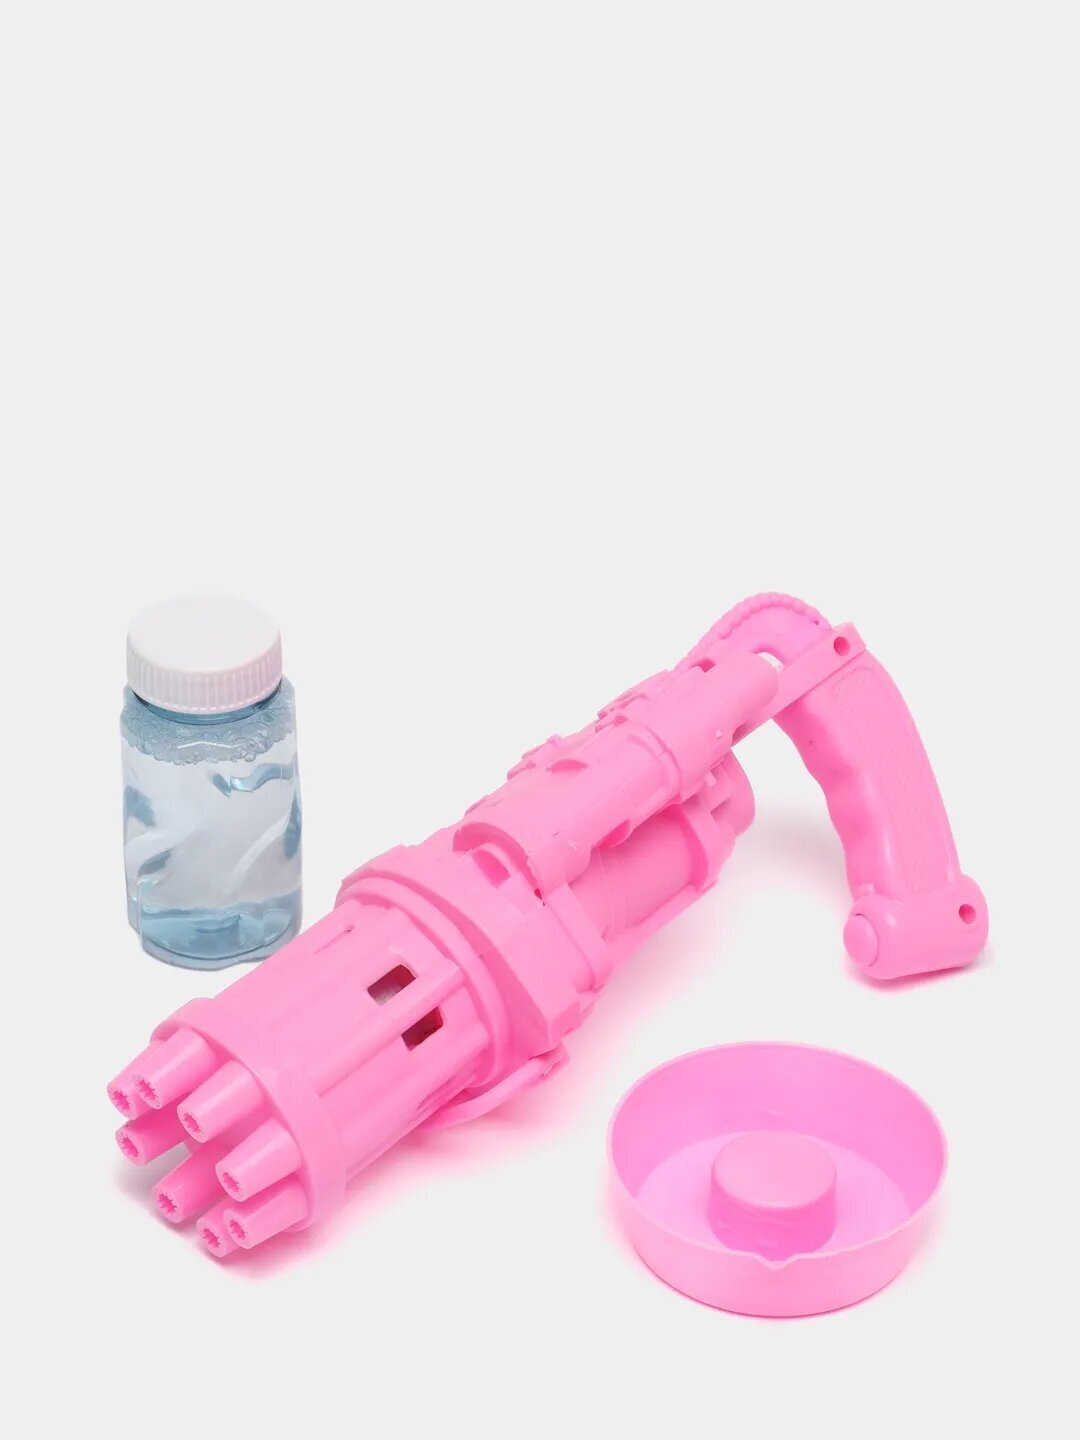 Генератор мыльных пузырей / мыльный пистолет / мыльные пузыри / мыльные пузыри пистолет / пистолет с пузырями / цвет розовый